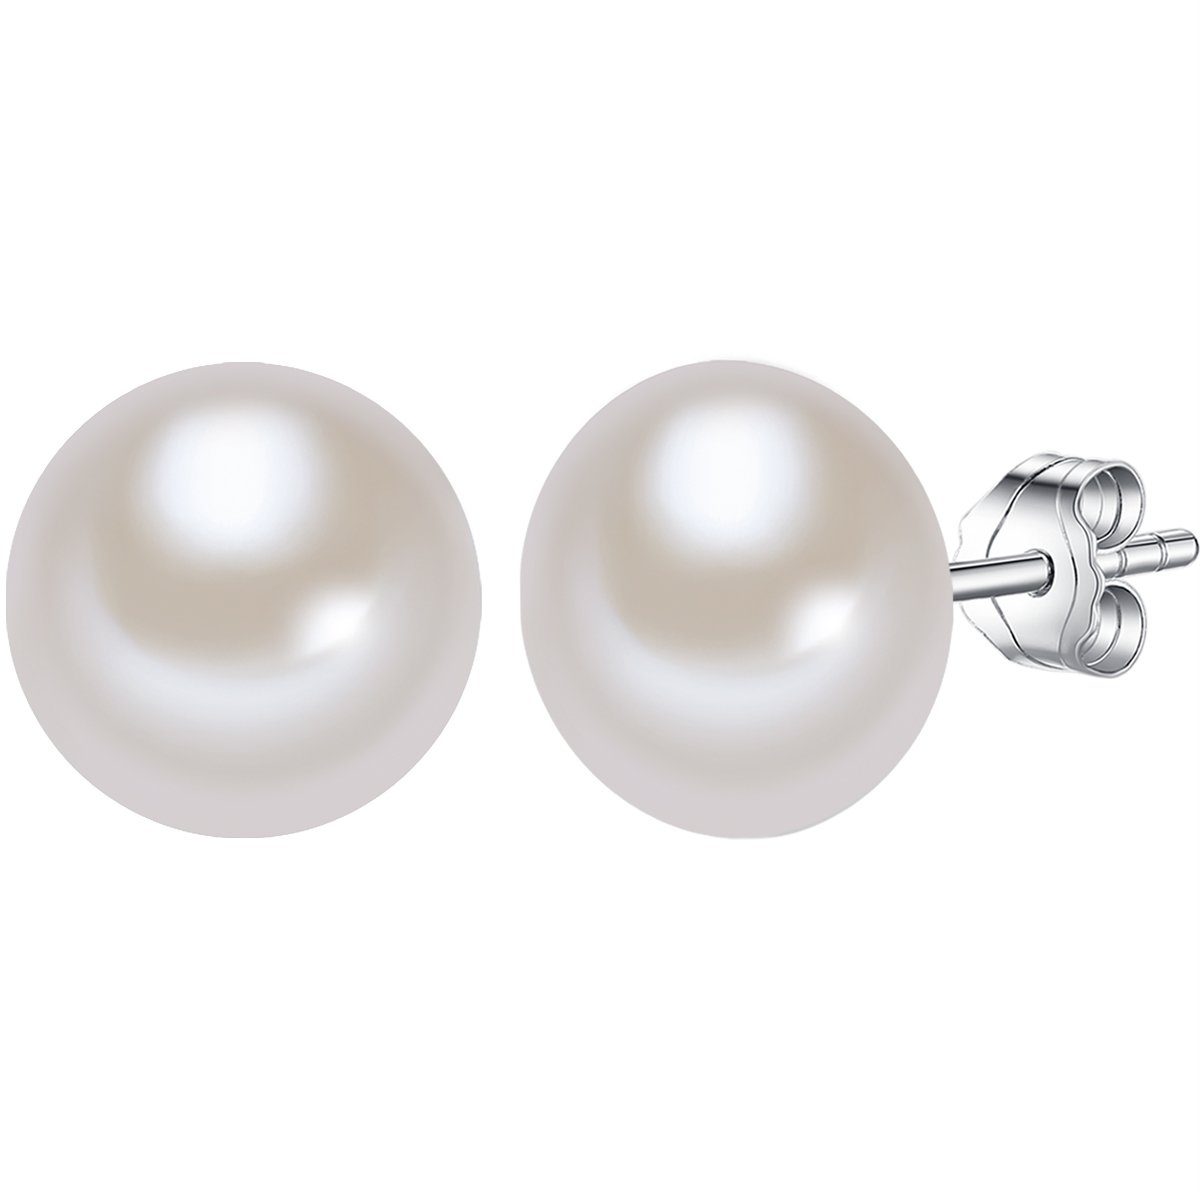 Valero Pearls Perlenohrringe Ohrstecker aus Süßwasserzuchtperlen, in weiß, aus Süßwasser-Zuchtperlen